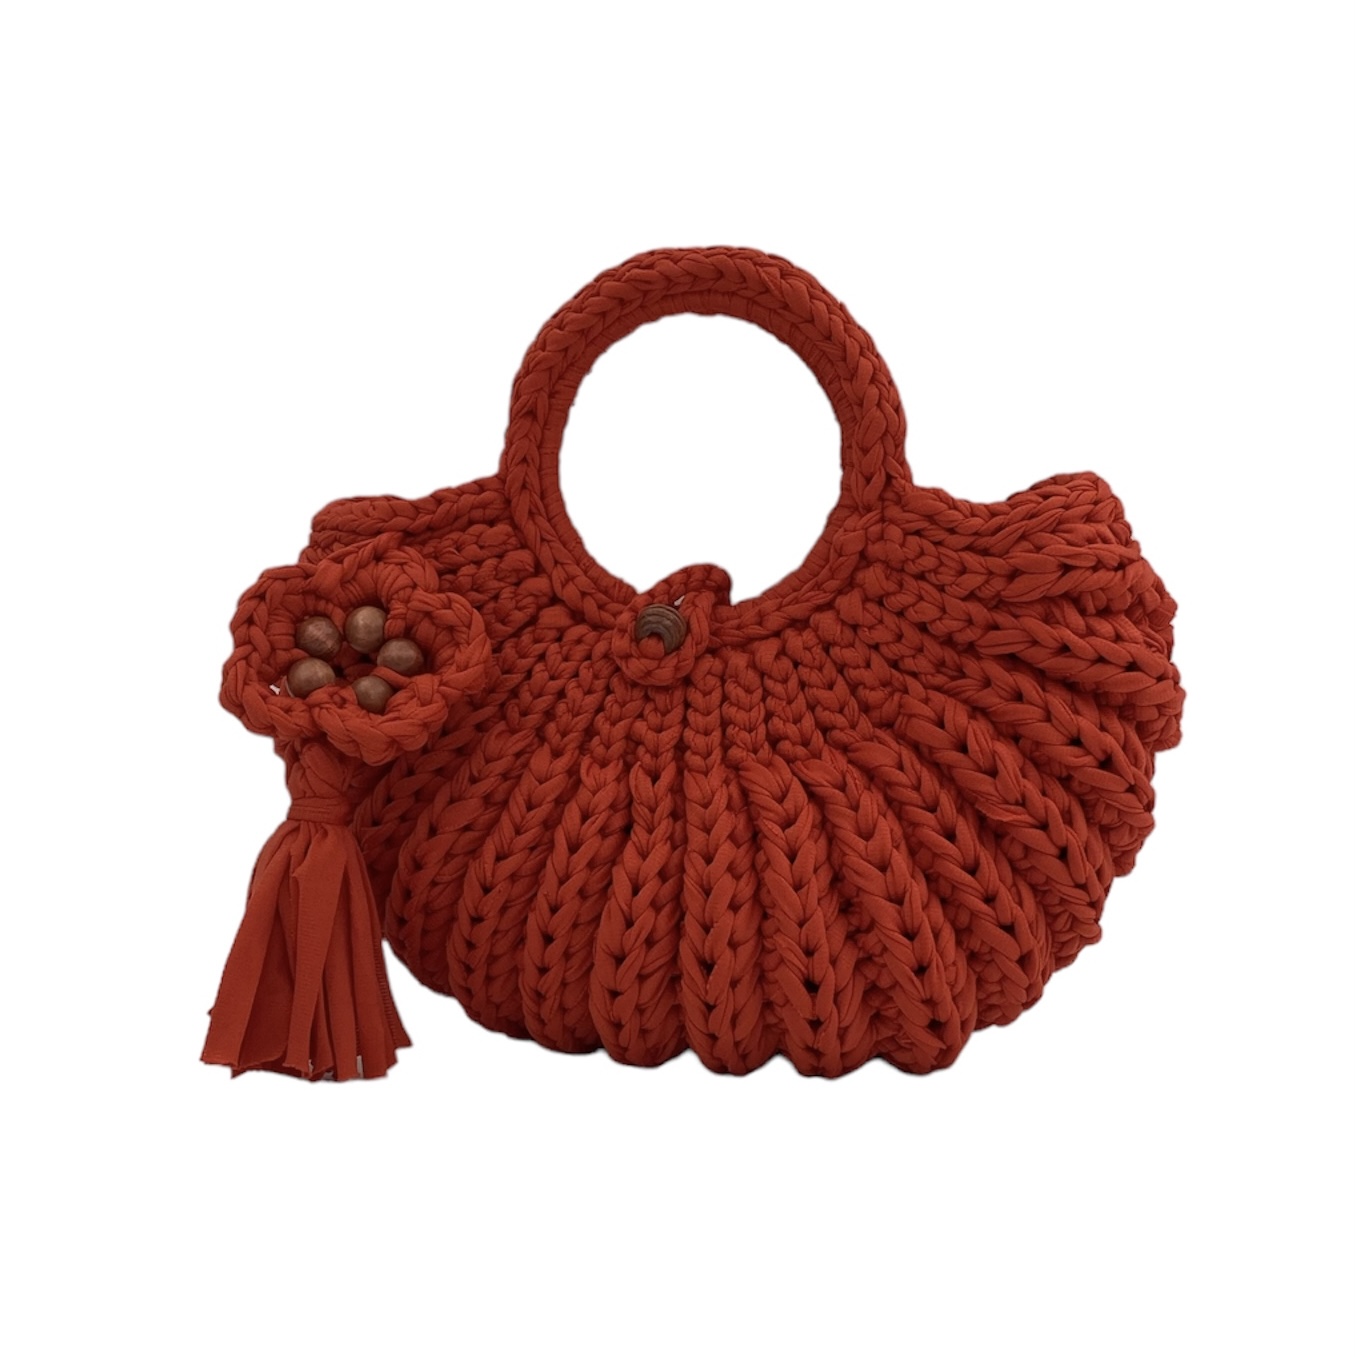 Silva Stitches Crochet Shell Bag Love of Apple - SILVA STITCHES CROCHET